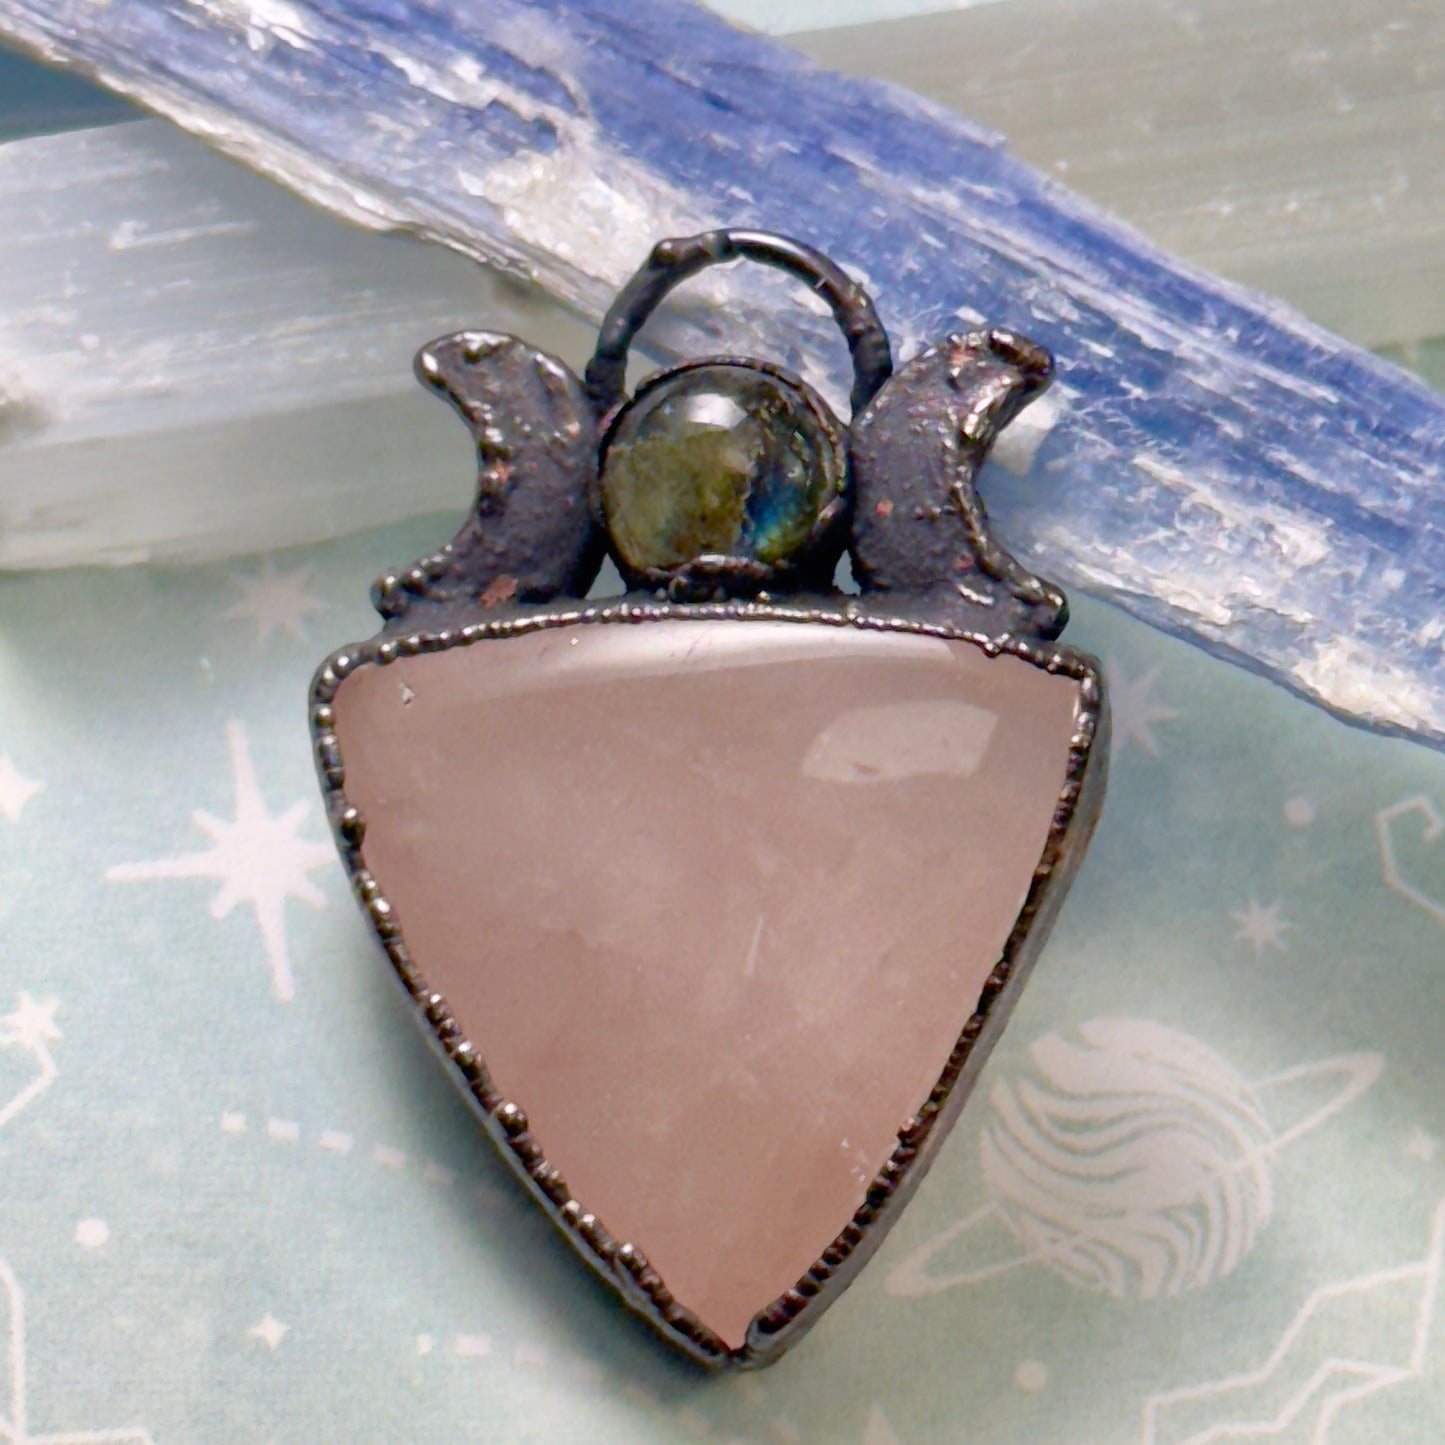 Lunar labradorite a top a healing crystal triangle rose quartz necklace